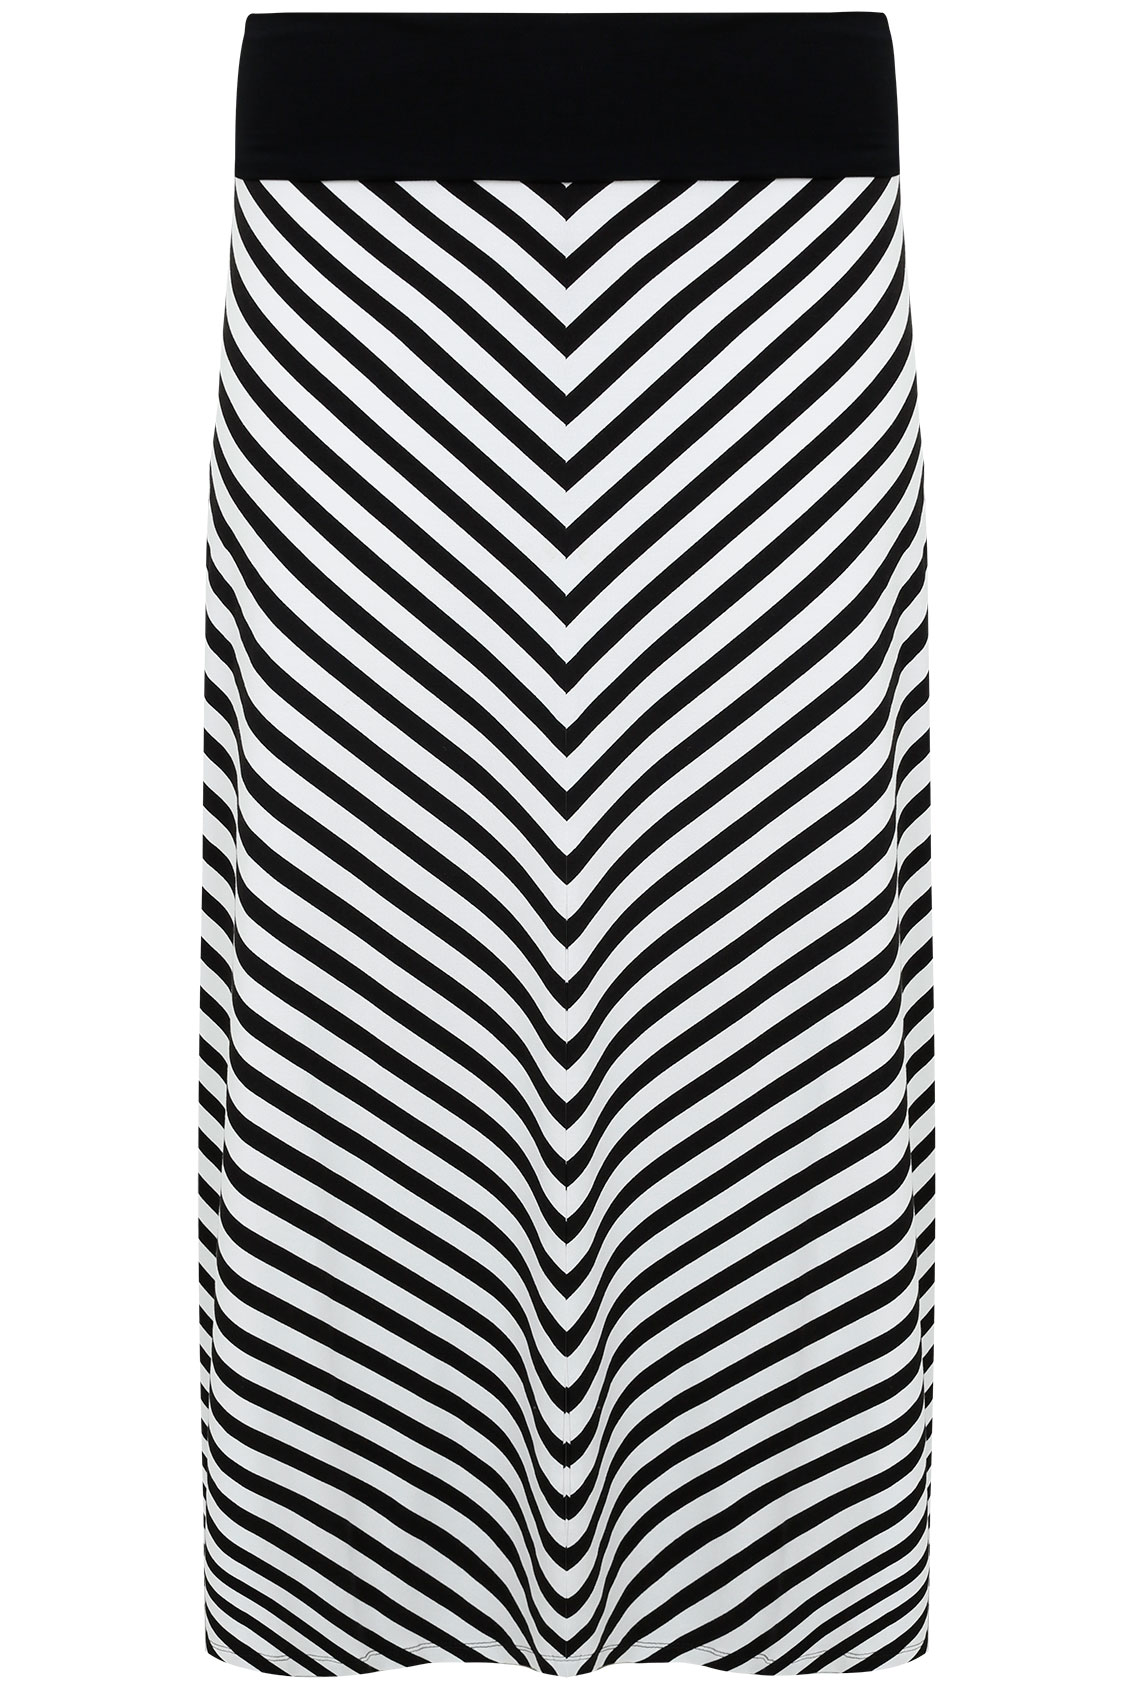 Black & White Chevron Maxi Skirt With Black Waist Panel Plus sizes 16 ...